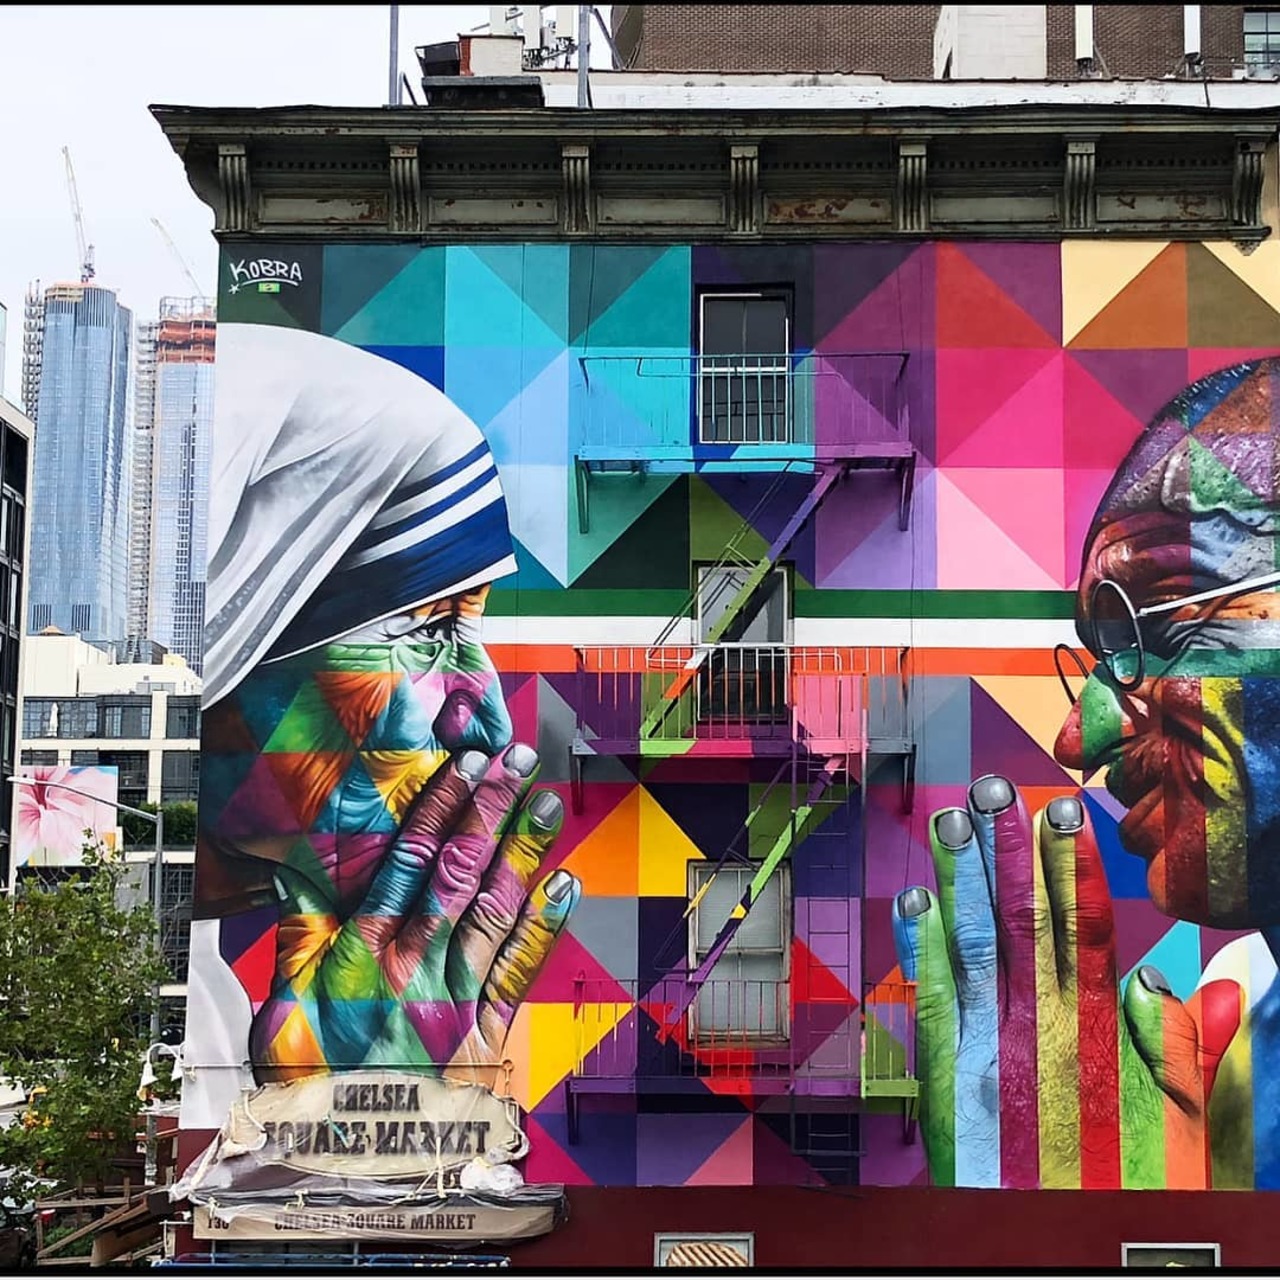 Praying for Peace. Mother Teresa & Gandhi. Street Art by @kobrastreetart at 18th and 10th in Chelsea, Manhattan.  Follow ▶️@artistsnartlovers for more ♾ #art #artists #streetart #kobrastreetart #motherteresa #nycstreetart #muralart #graffiti #Manhattan #artistsandartlovers https://t.co/VkrEBd753v